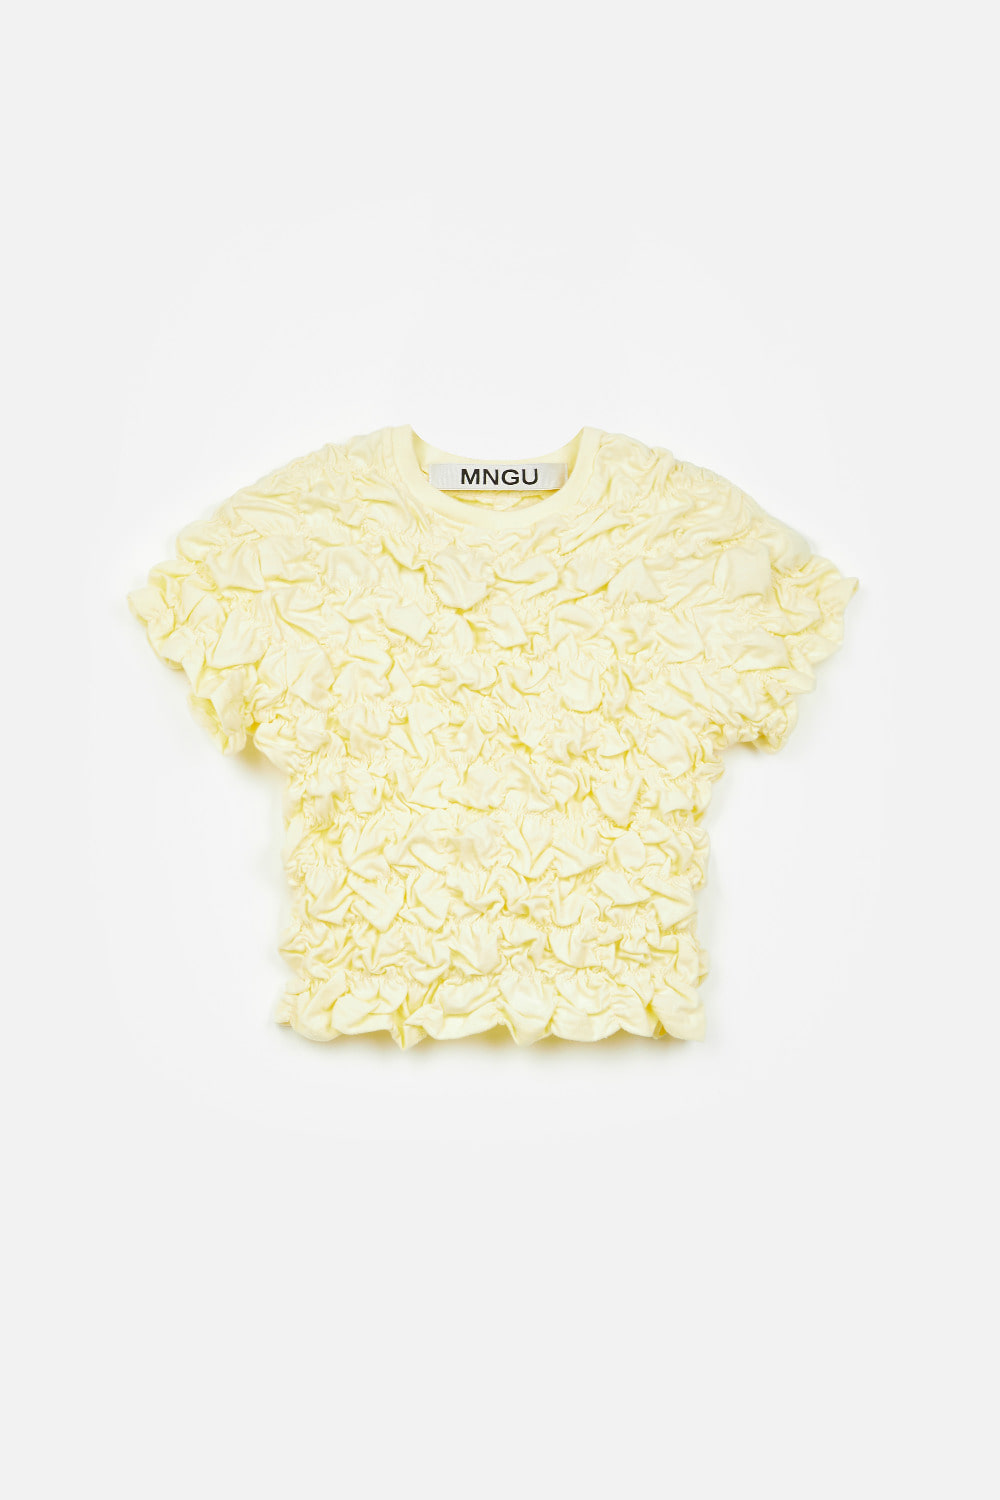 [RESTOCK] 크롭티드 크링클 티셔츠 IN 레몬-크림